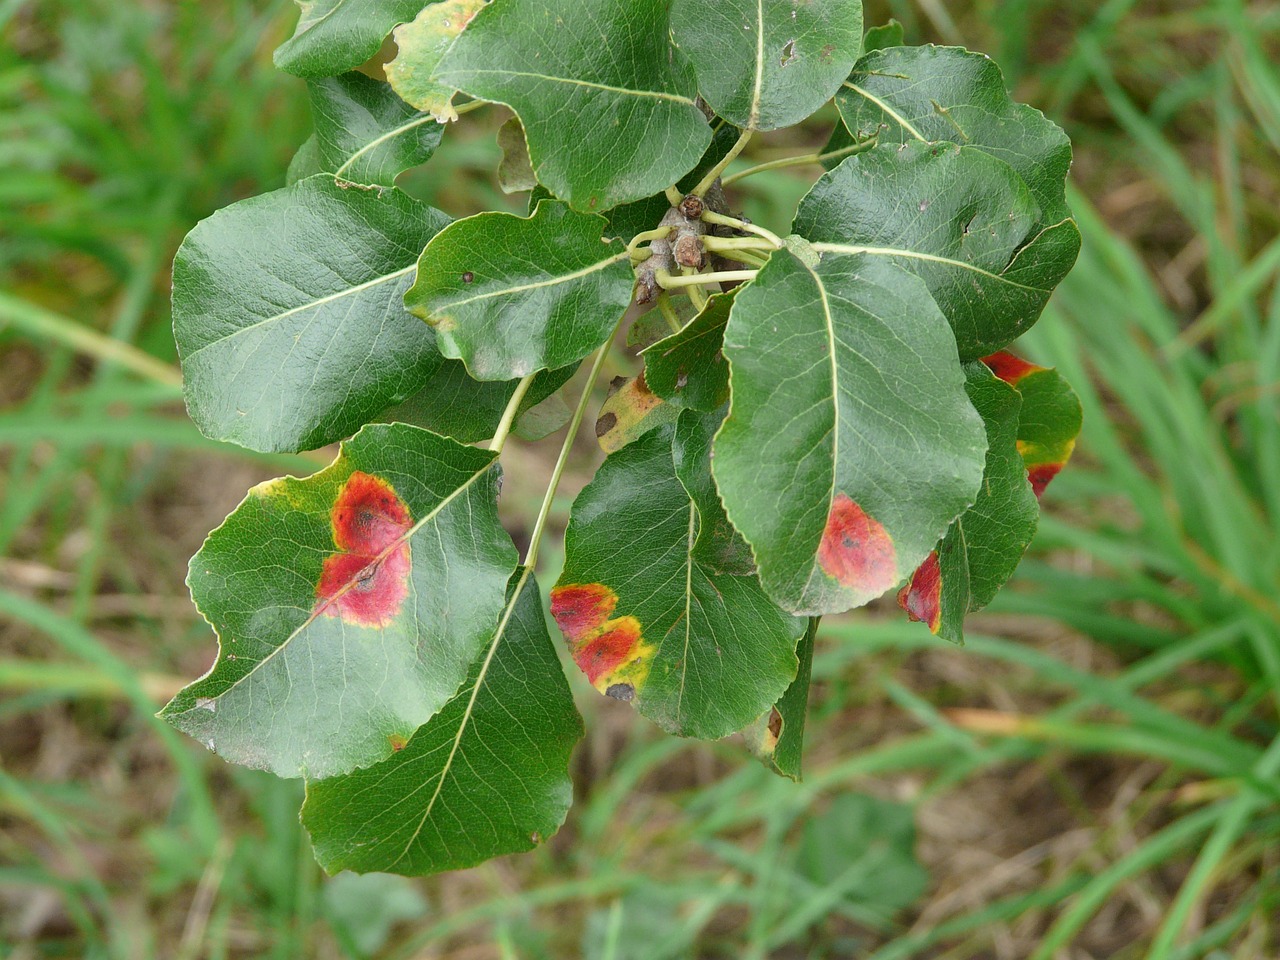 birnbaum leaves pear disease free photo